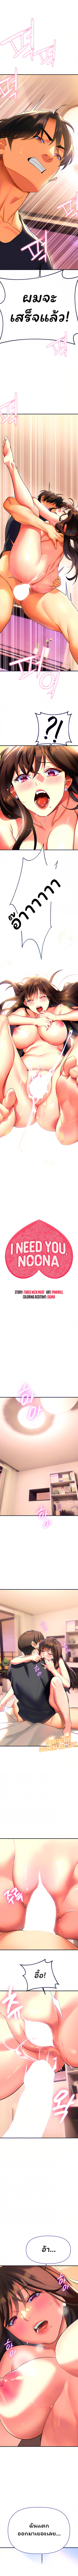 I Need You, Noona 9 1